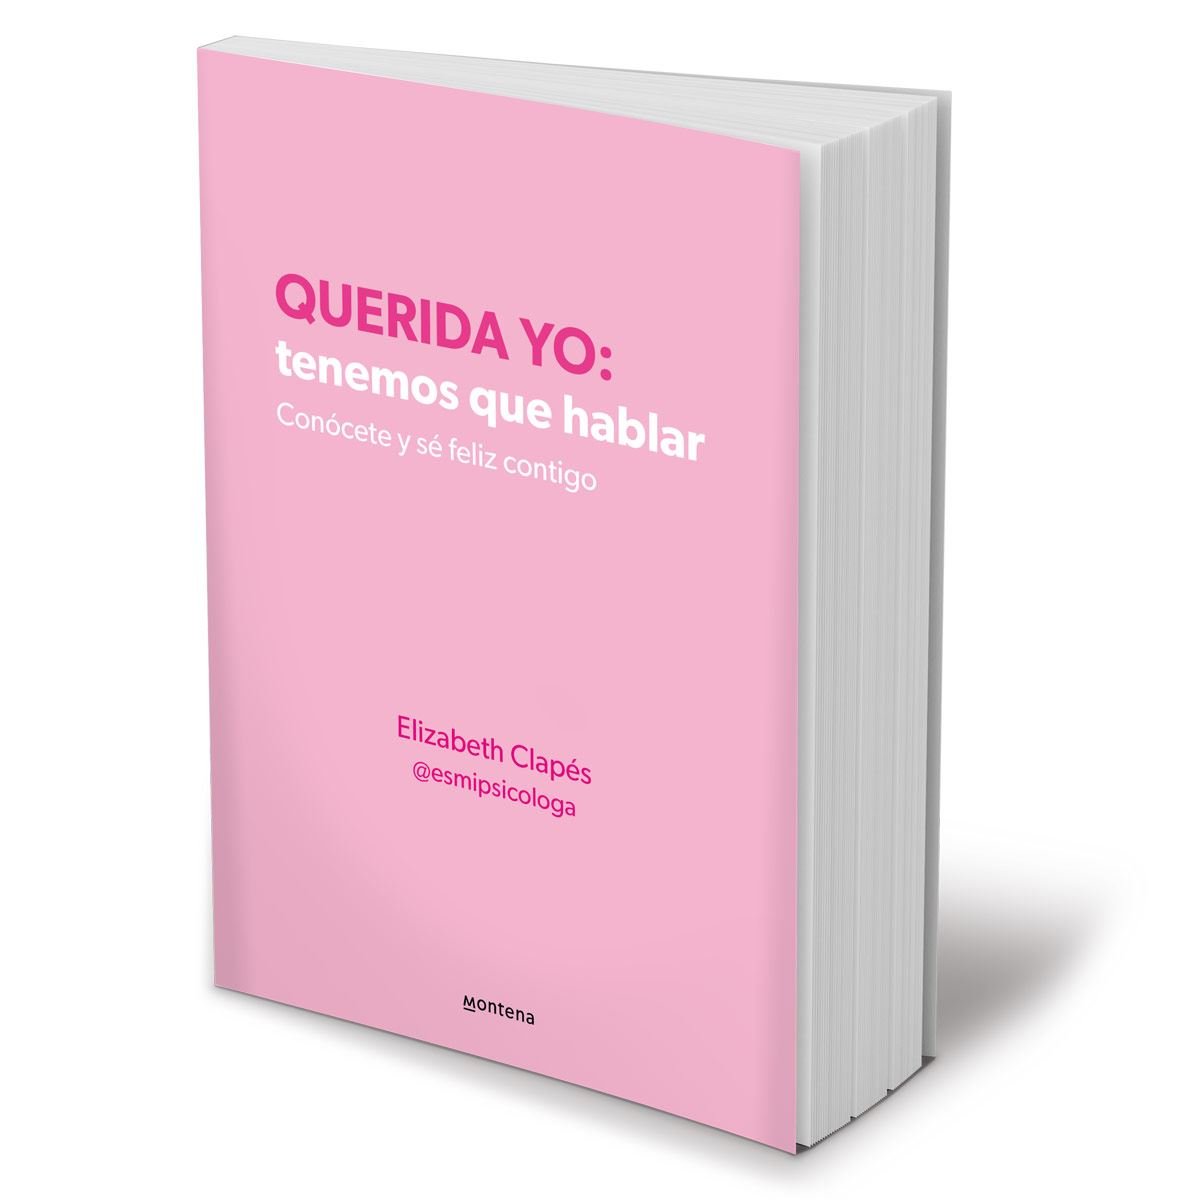  Querida yo tenemos què hablar tapablanda (Spanish Edition):  naniare, gighale: Books